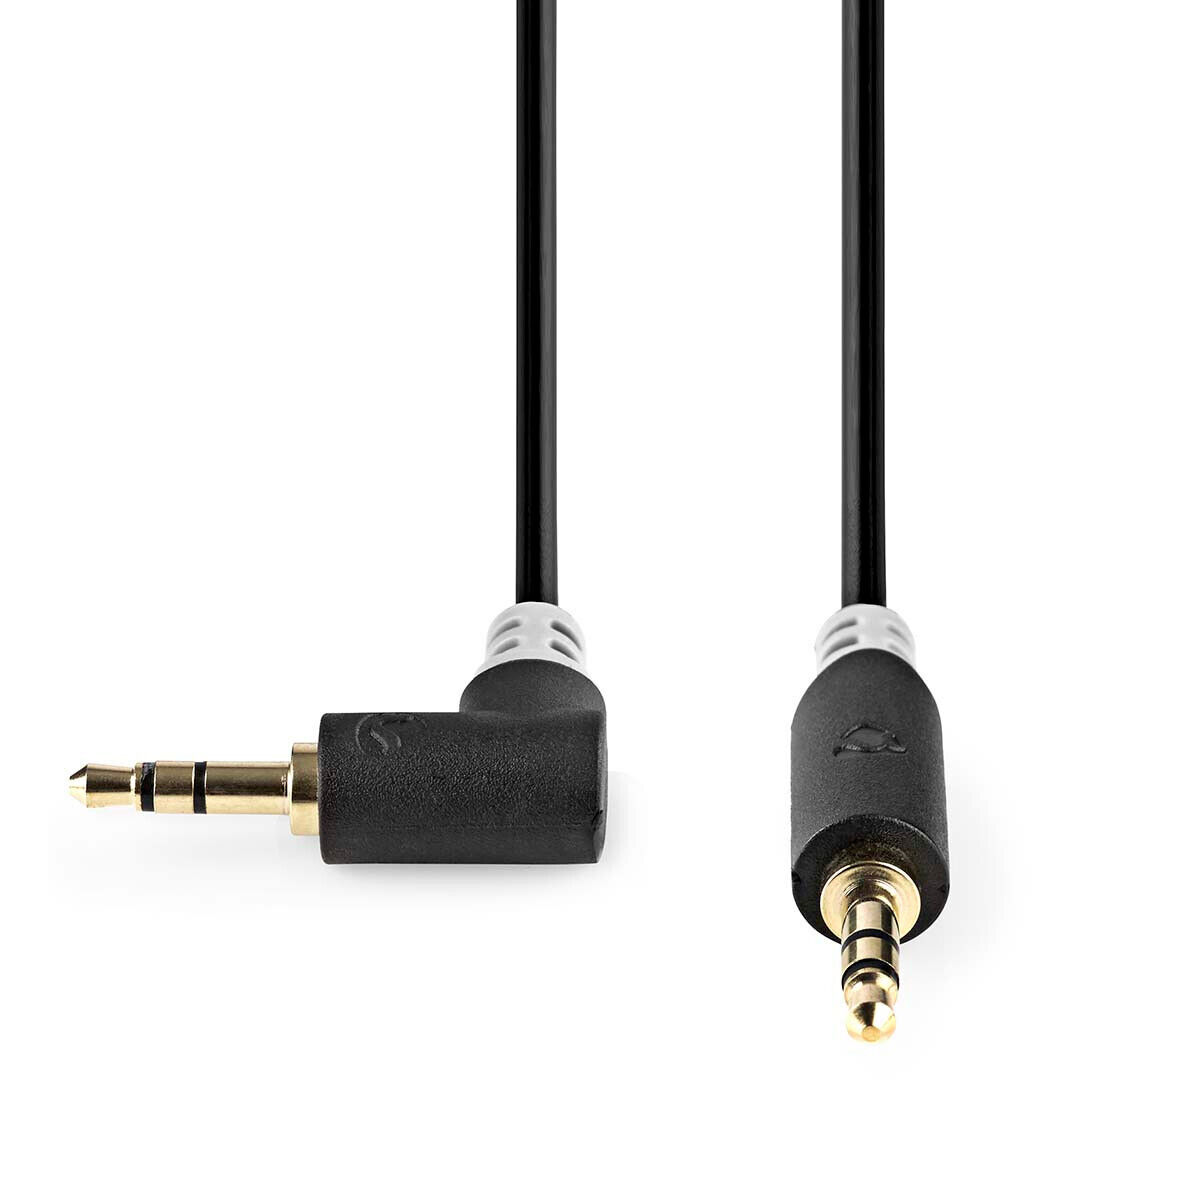 Stereo Audio kabel 3,5mm Stecker 0,5m Winkel Winkelstecker Klinkenkabel Klinke